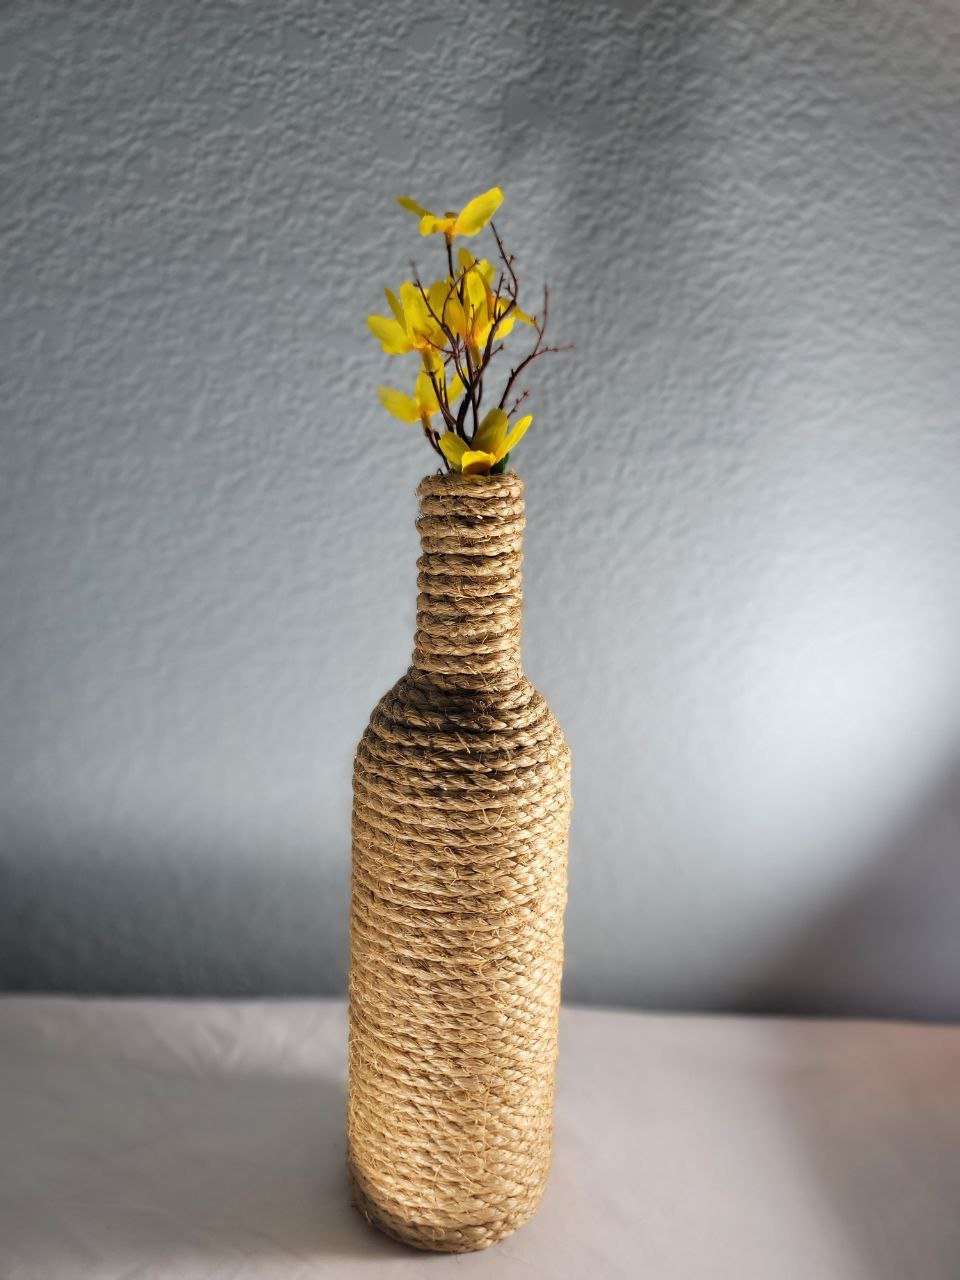 sunshine bloom Bottle vase.jpg